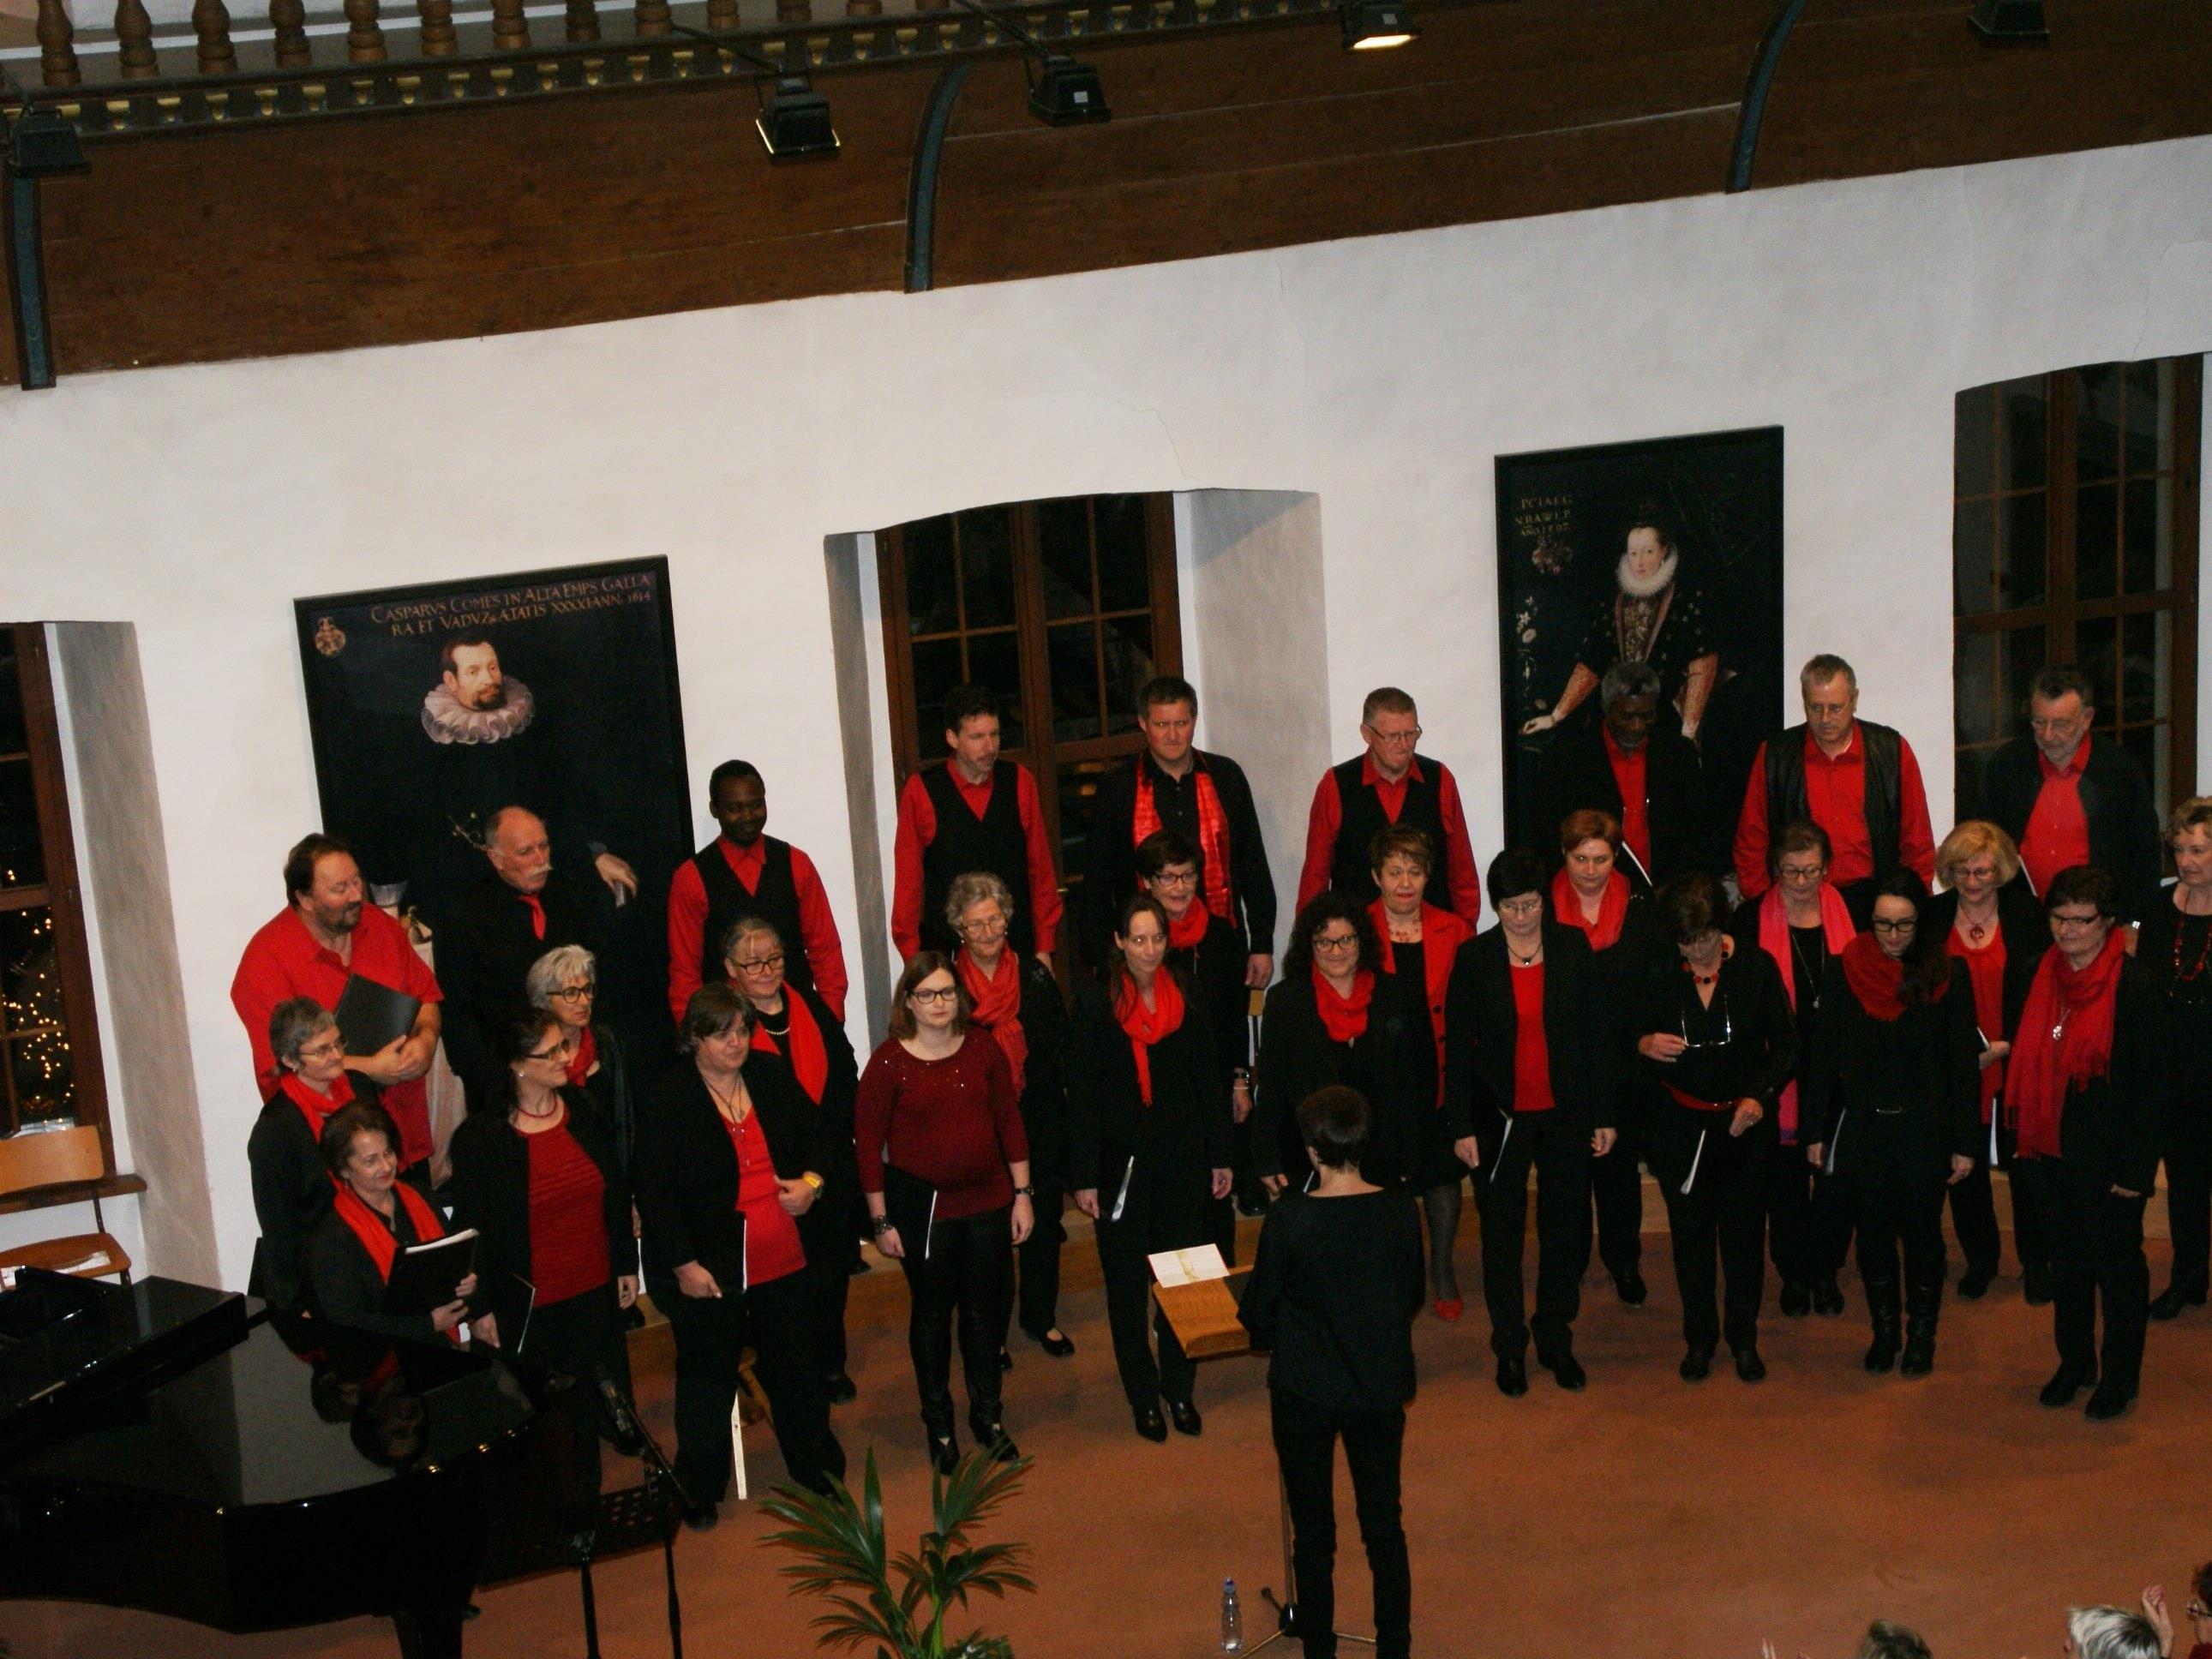 Die Nibelungenhort-Sänger entführten ihre Gäste zu einer musikalische Weihnachtsreise!